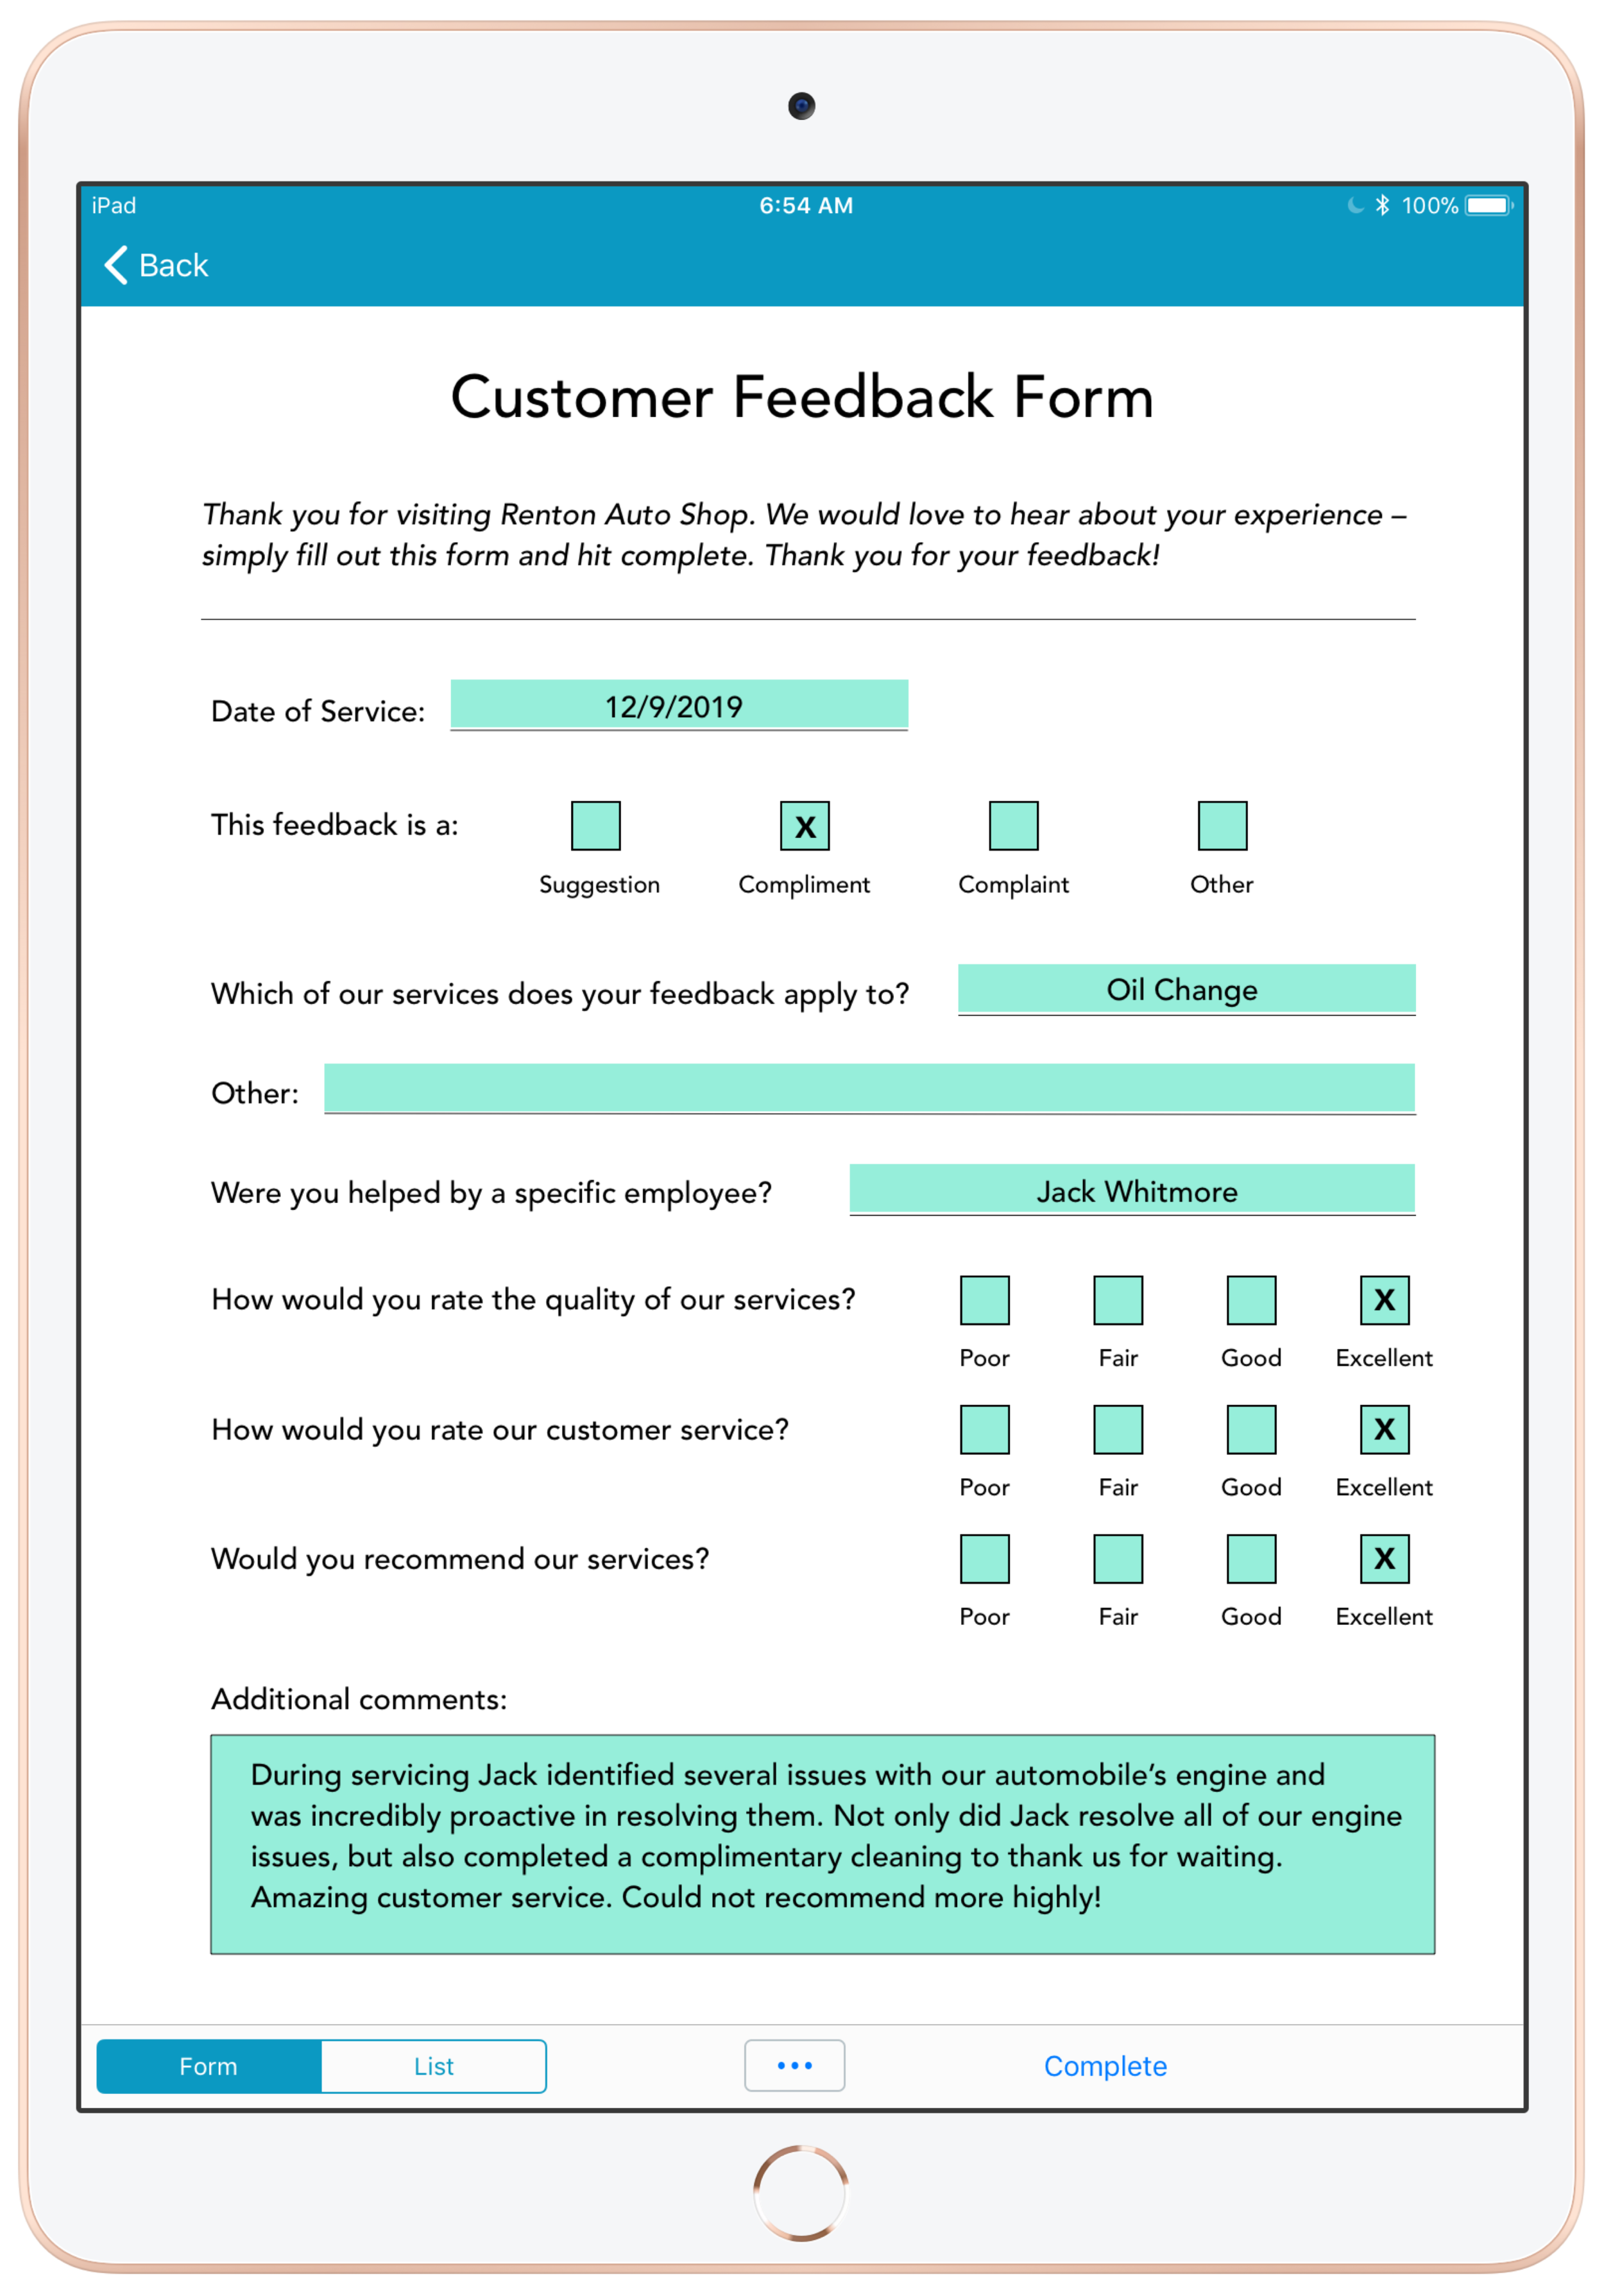 Customer Satisfaction Report Template